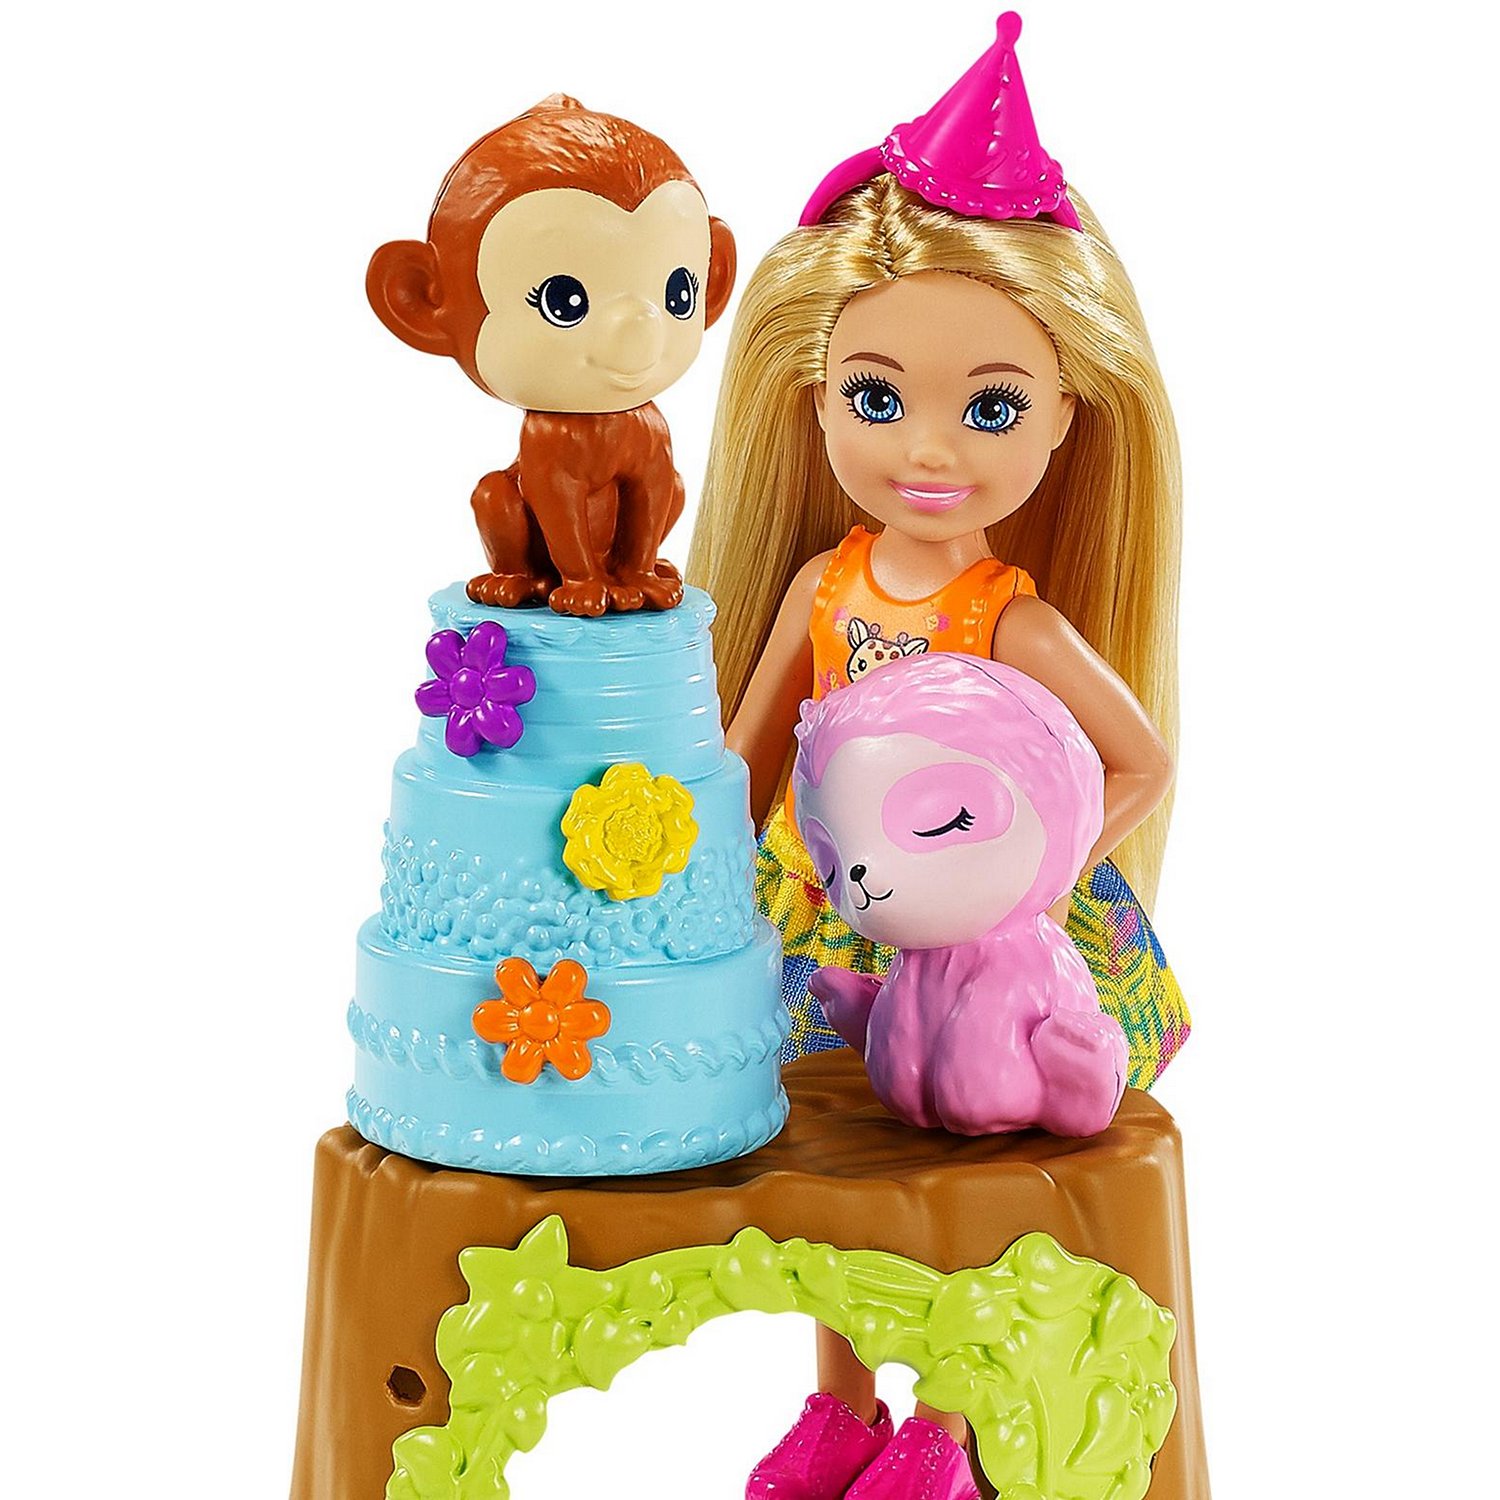 Игровой набор Barbie Chelsea The lost birthday, Потерянный день рождения, GTM84